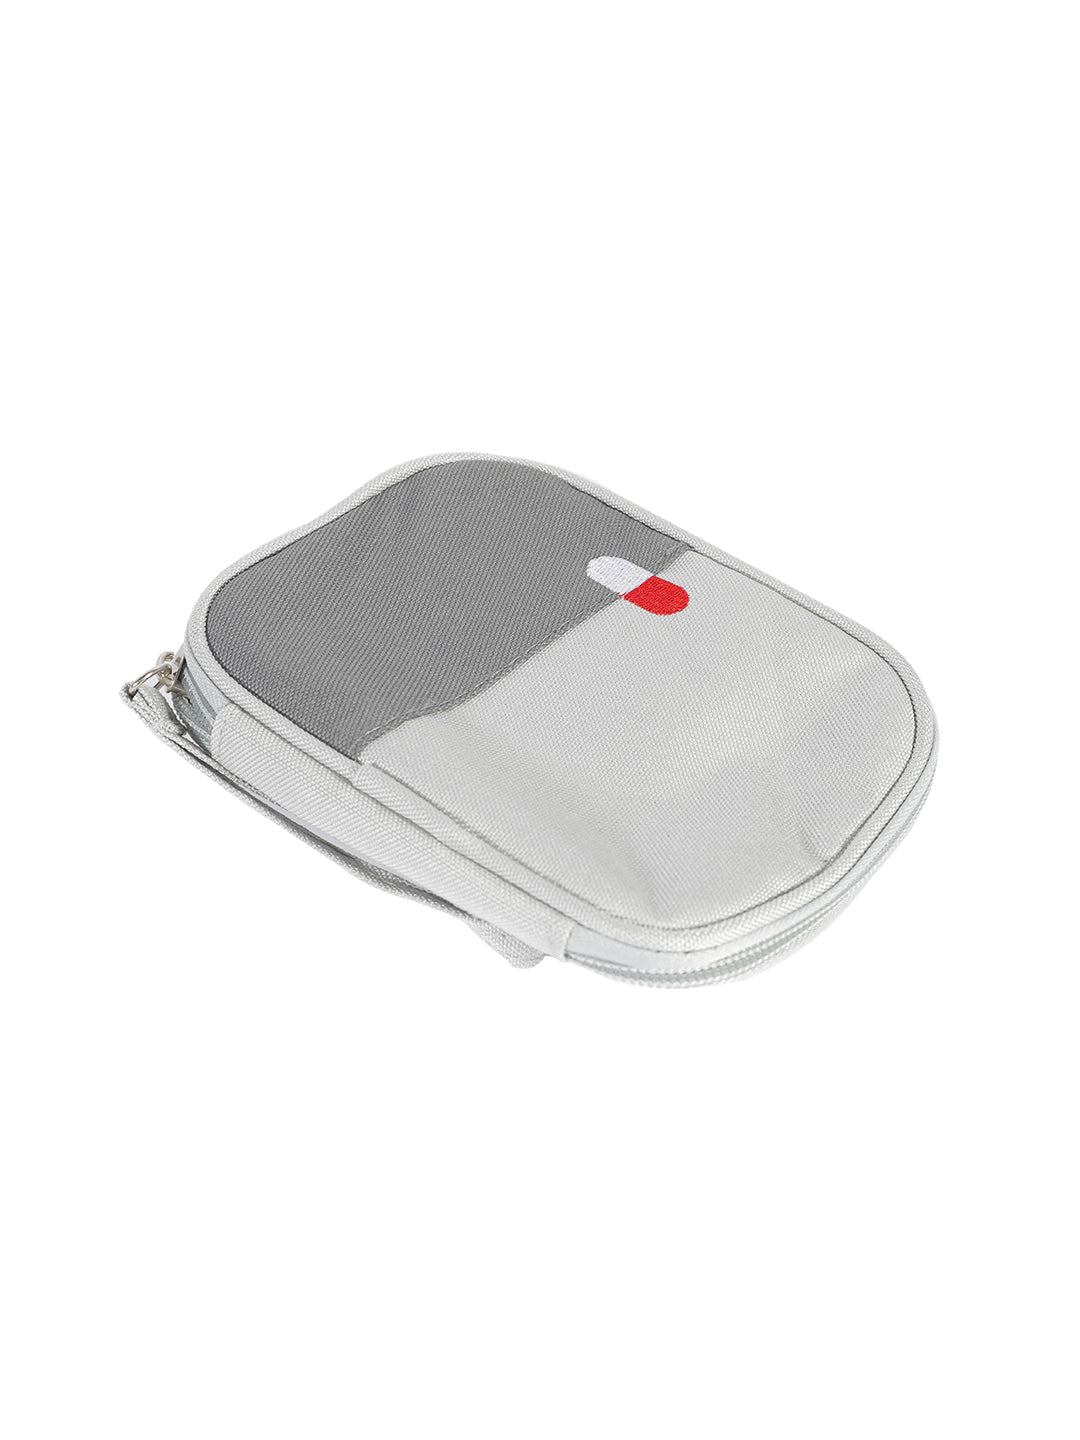 VON CASA Empty First Aid Storage Pouch - Grey